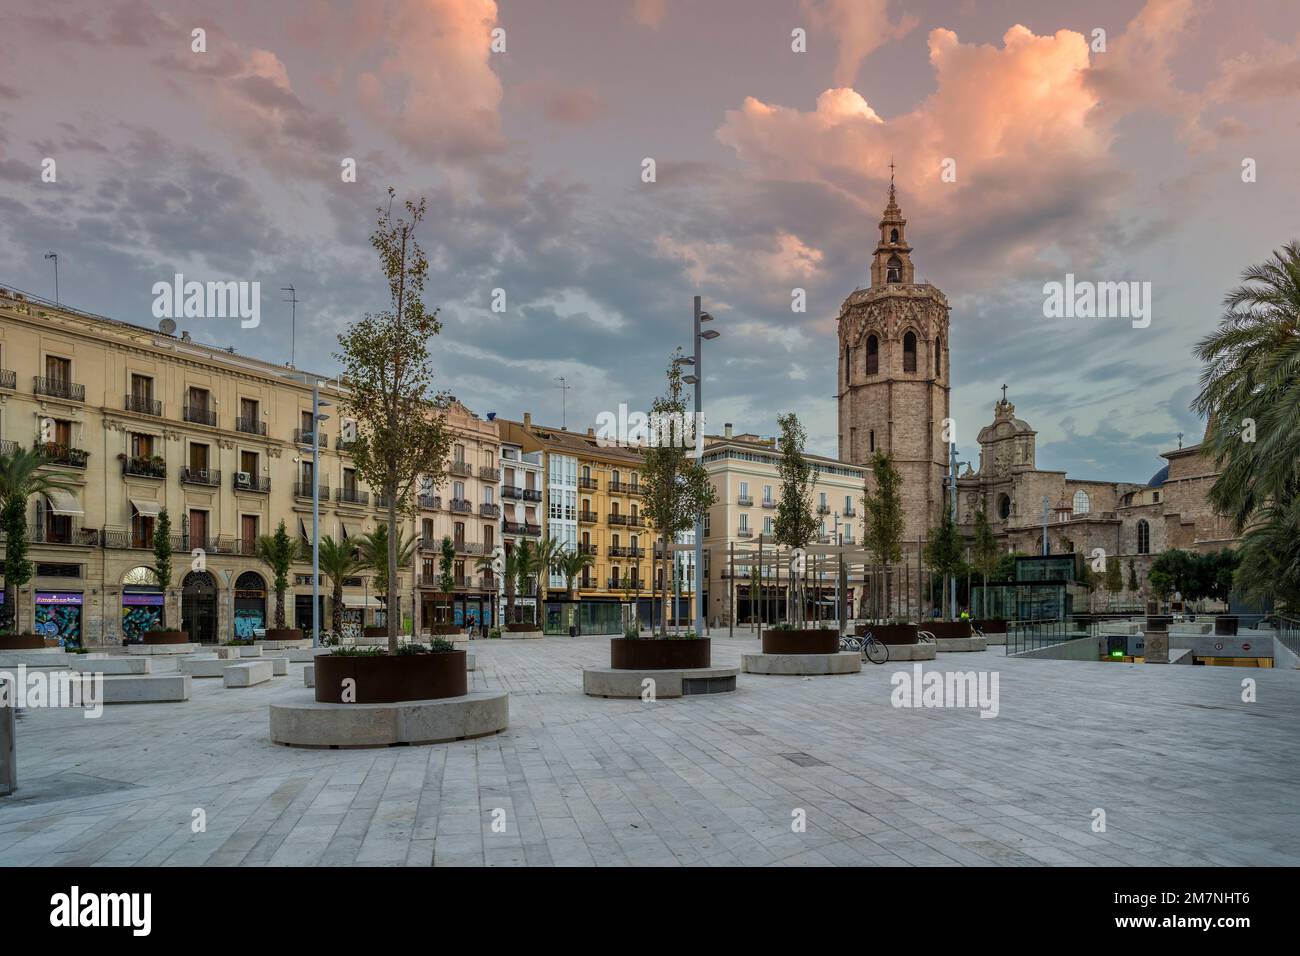 Plaza de la Reina y campanario de Micalet, Valencia, Comunidad Valenciana, España Foto de stock